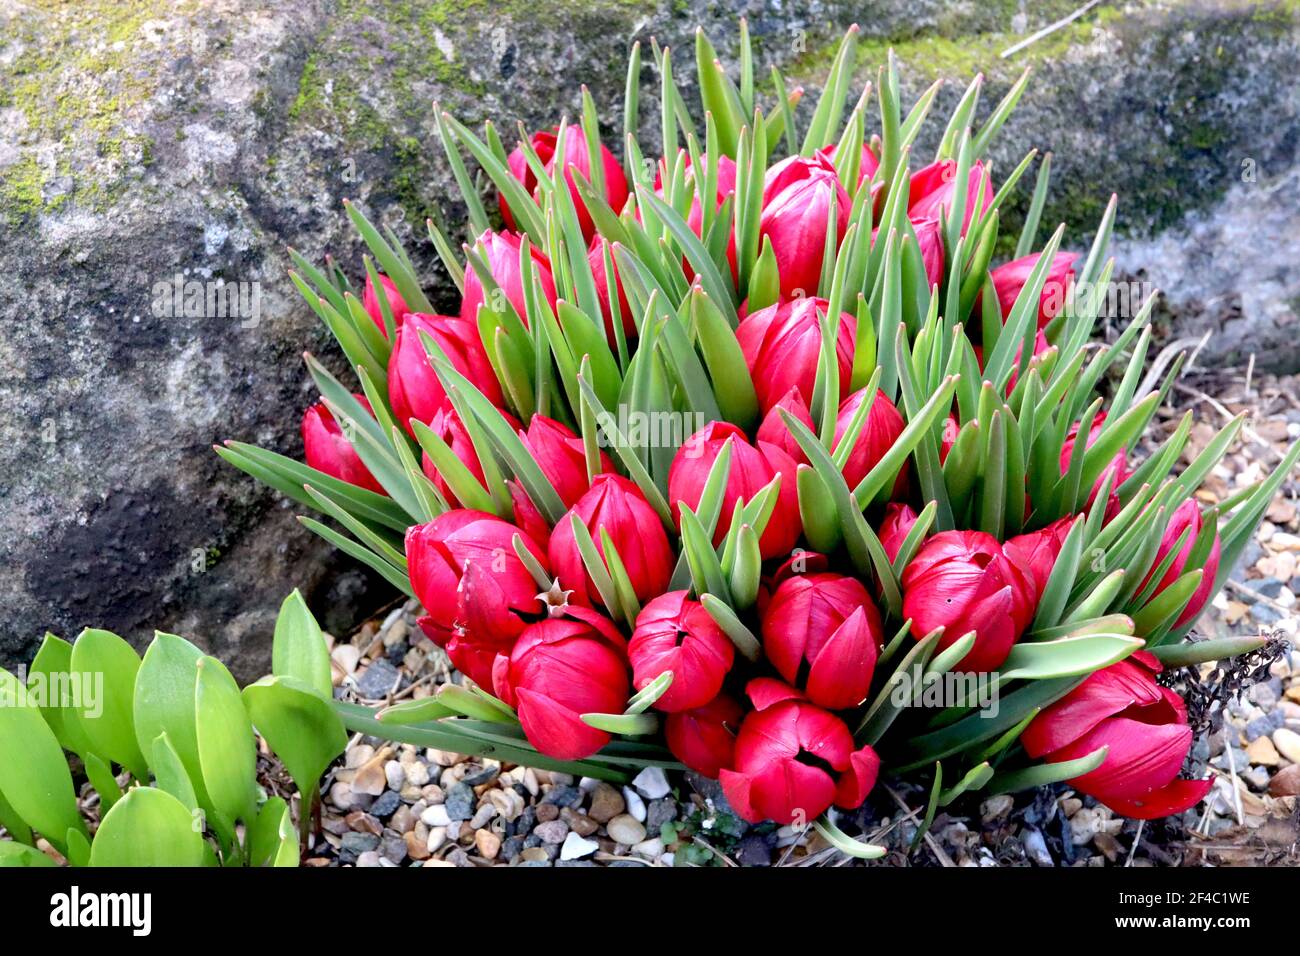 Tulipa humilis ‘Lilliput’ specie tulipano 15 Liliput nano tulipano – tulipani rossi in miniatura, marzo, Inghilterra, Regno Unito Foto Stock